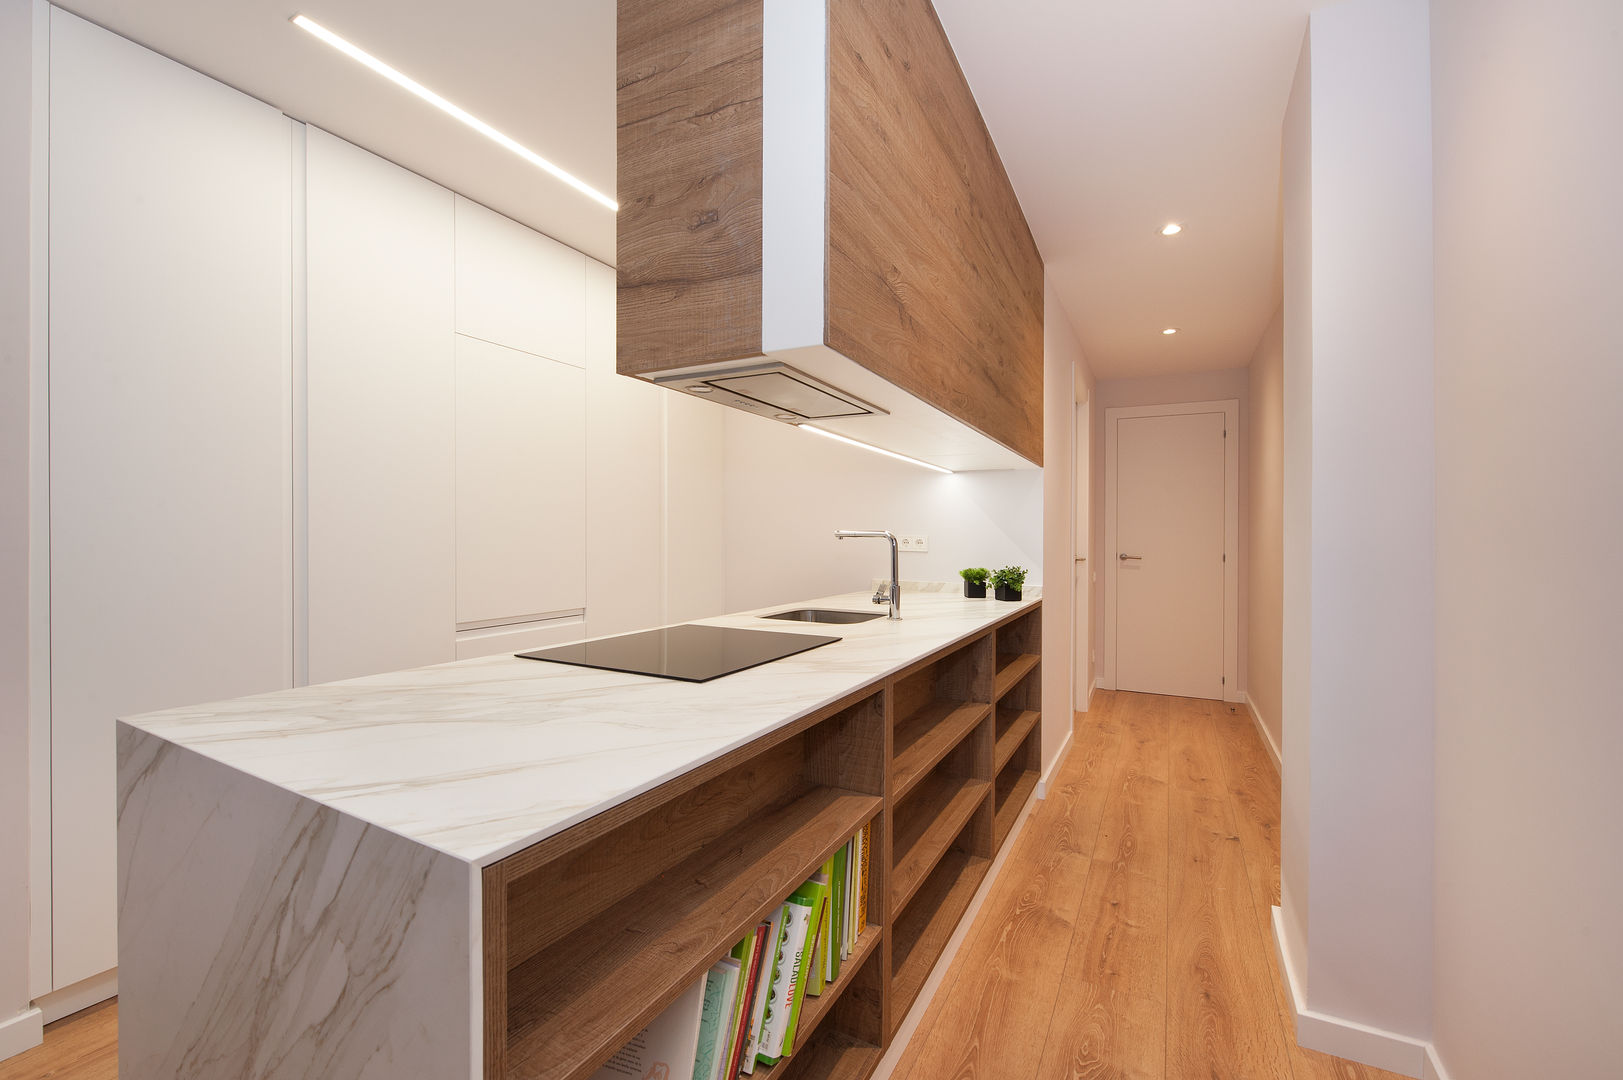 Restaurar la Armonía y el Equilibrio con el Feng Shui en este Apartamento en Barcelona, Cristina Jové Cristina Jové ห้องครัว ตู้เก็บของและชั้นวางของ